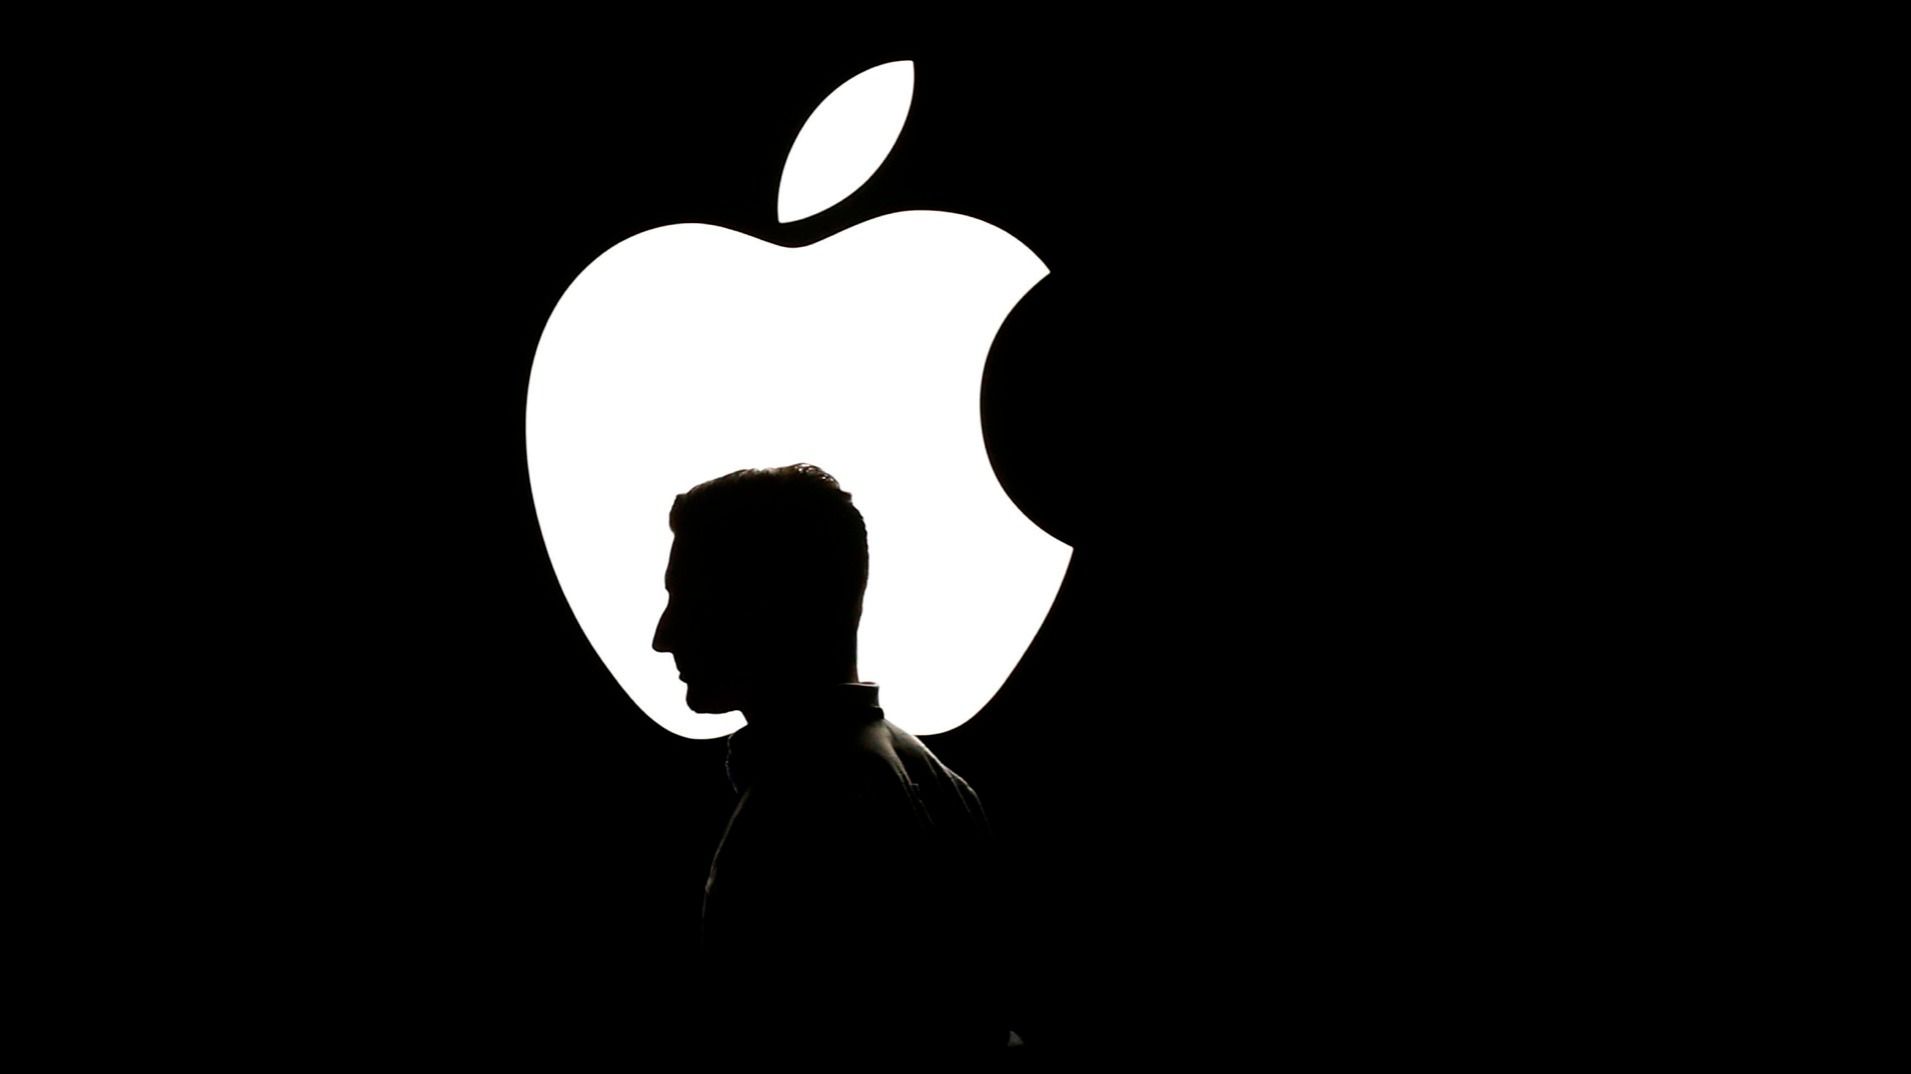 ФСБ России заявила о раскрытии шпионского заговора США с использованием вредоносного ПО для проникновения в смартфоны Apple